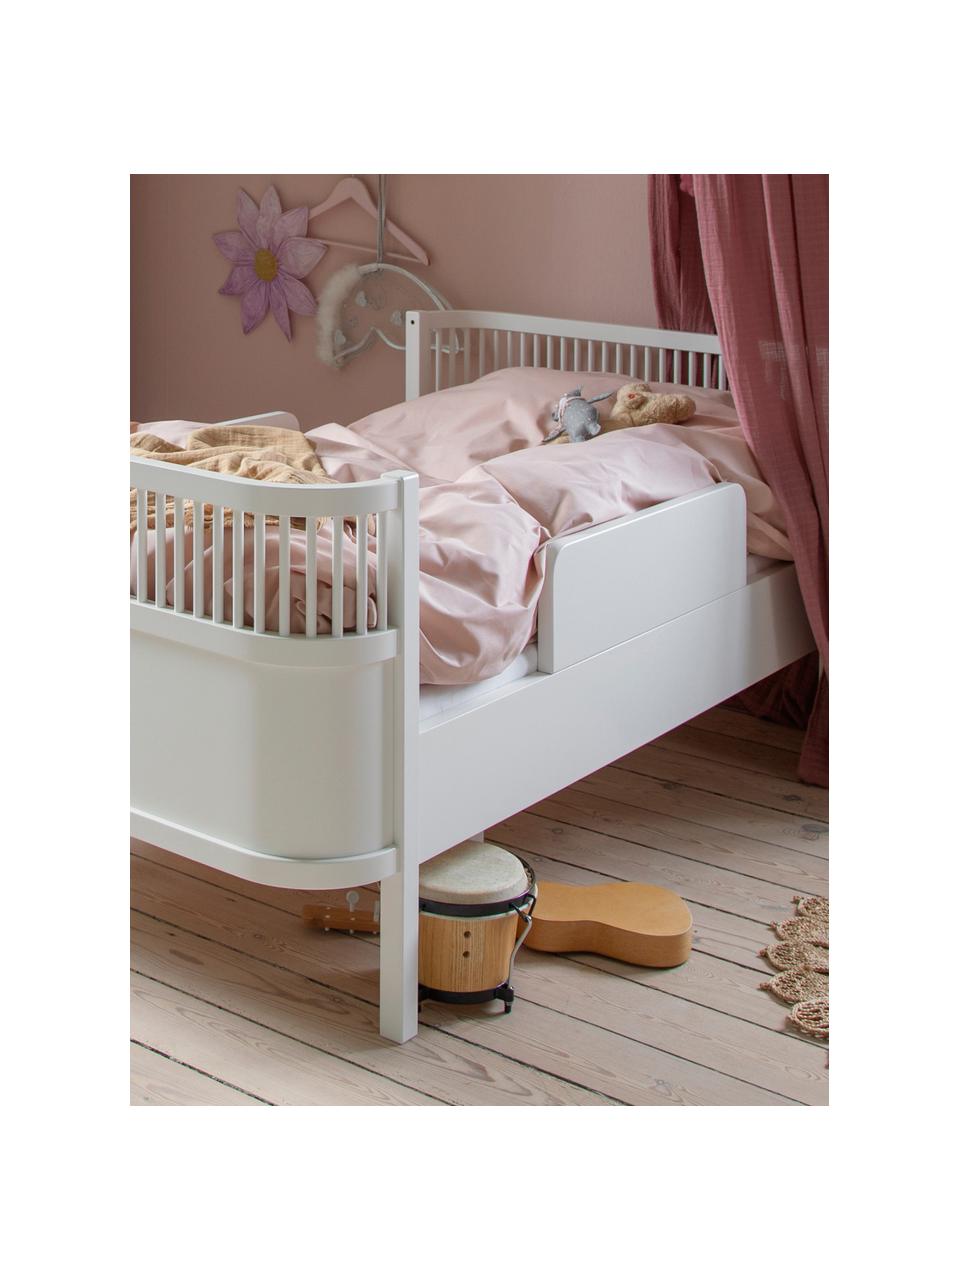 Tablero soporte de madera cama infantil Junior & Grow, Tablero de fibras de densidad media (MDF), Madera pintado blanco, An 60 x Al 17 cm